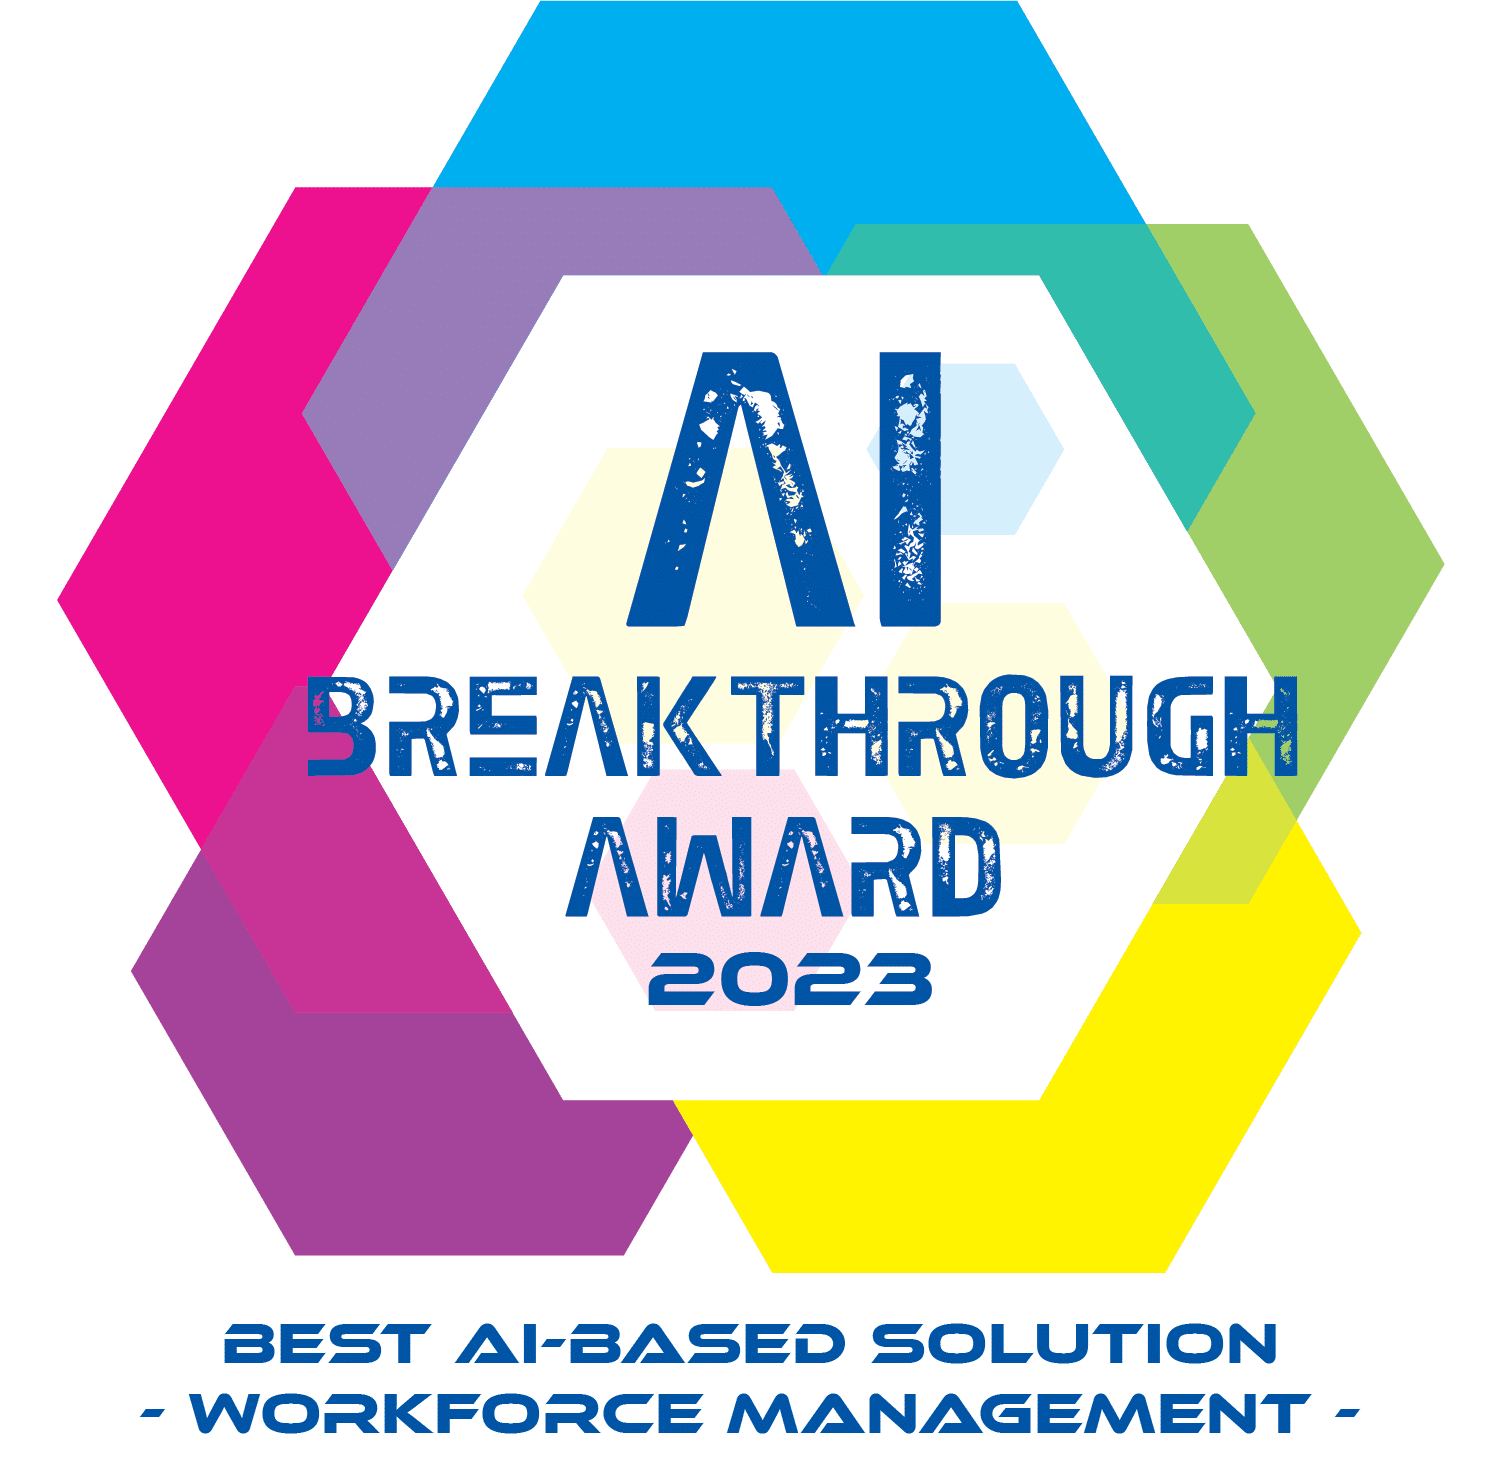 AI Breakthrough Awards